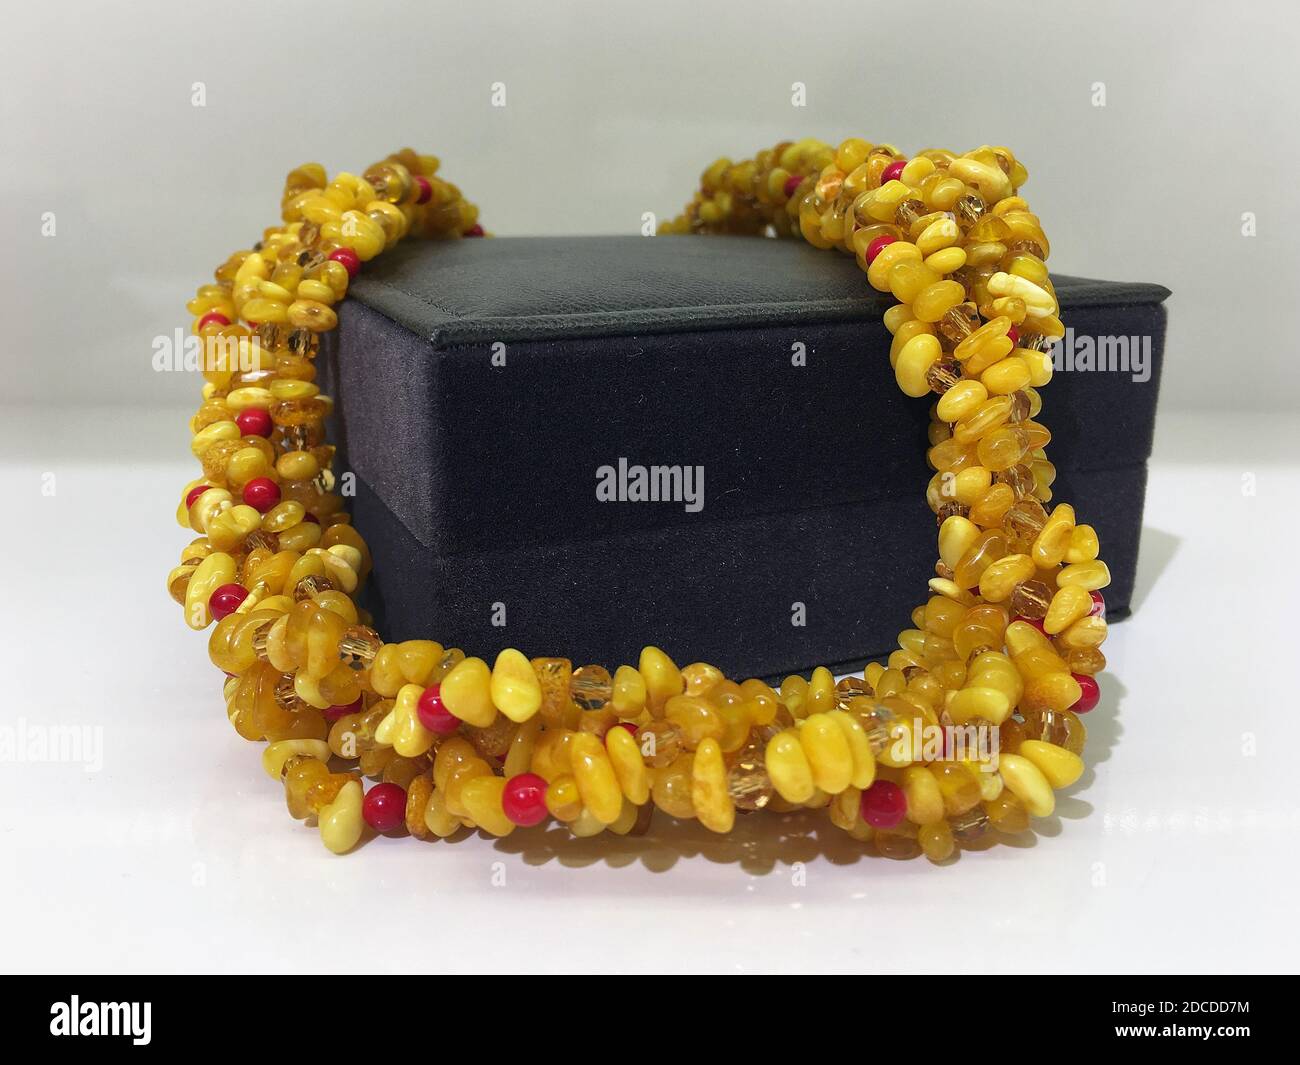 Handmade beaded amber beads lie on a dark gift jewelry box. Stock Photo